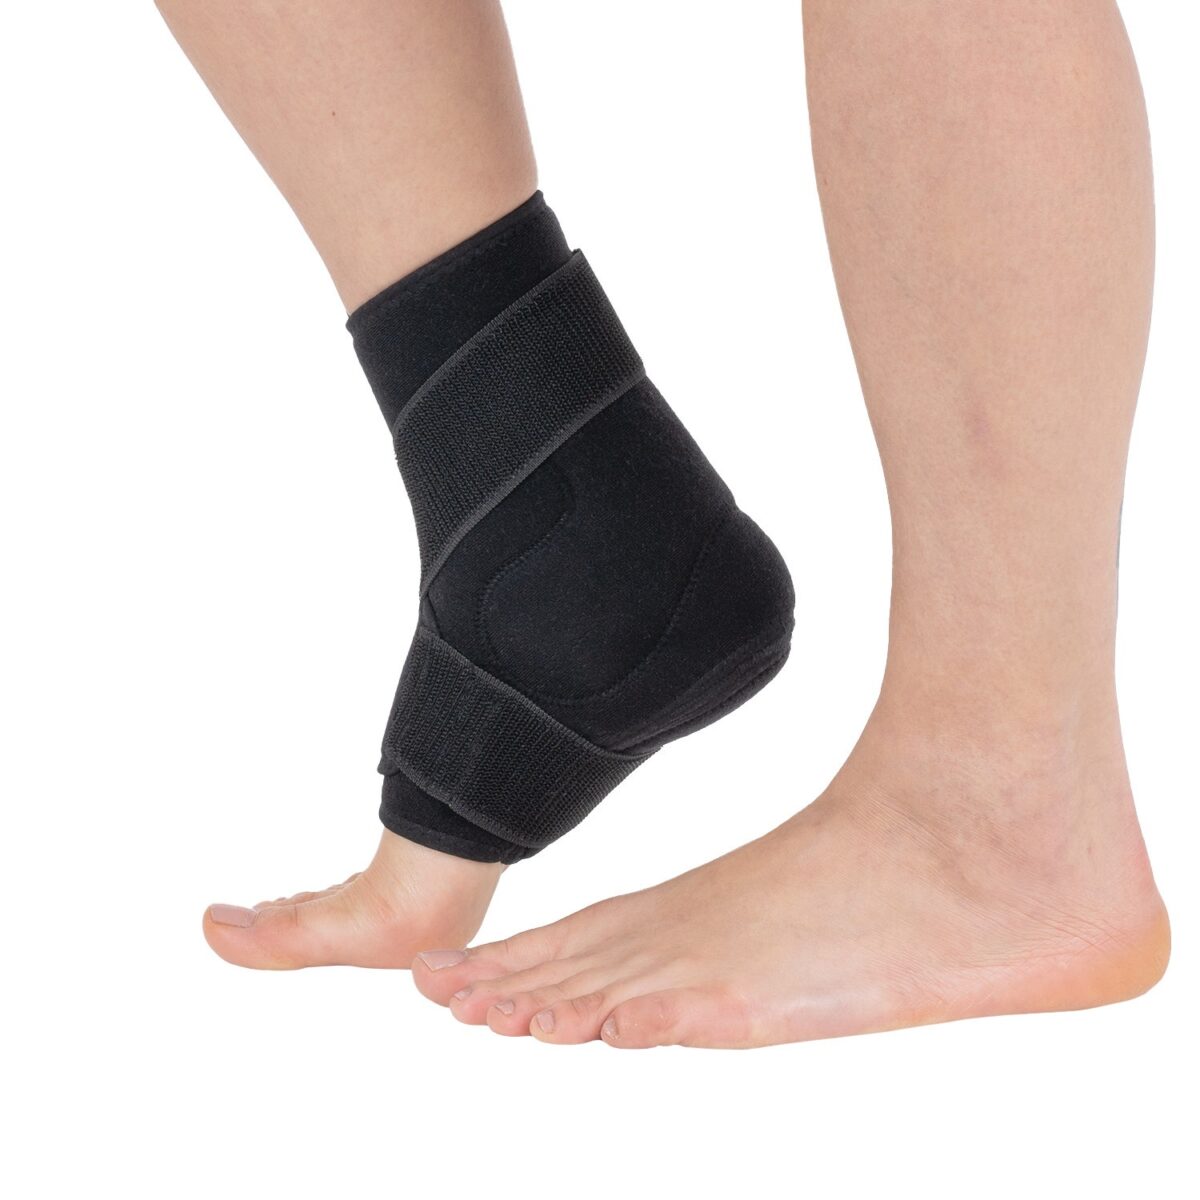 Chevillière avec support du tendon dachilles avec bandage en huit orthèses pied et cheville w607 wingmed produits orthopédiques 54